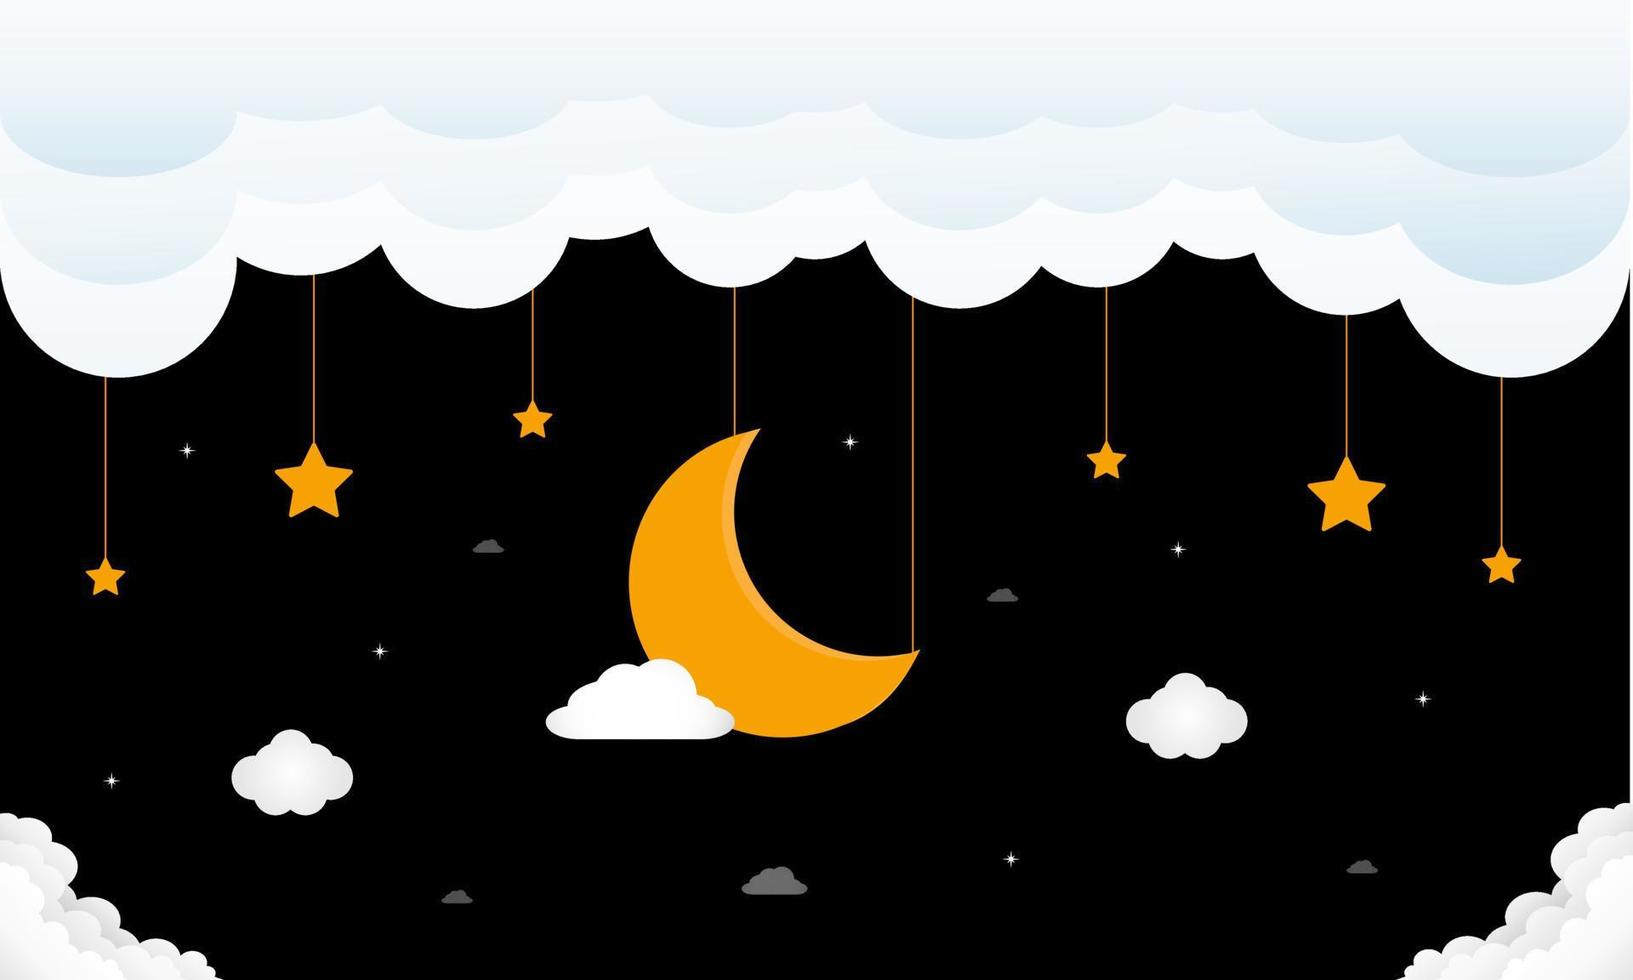 dulces sueños. luna creciente, nubes y estrellas en el fondo de la noche negra. ilustración vectorial vector